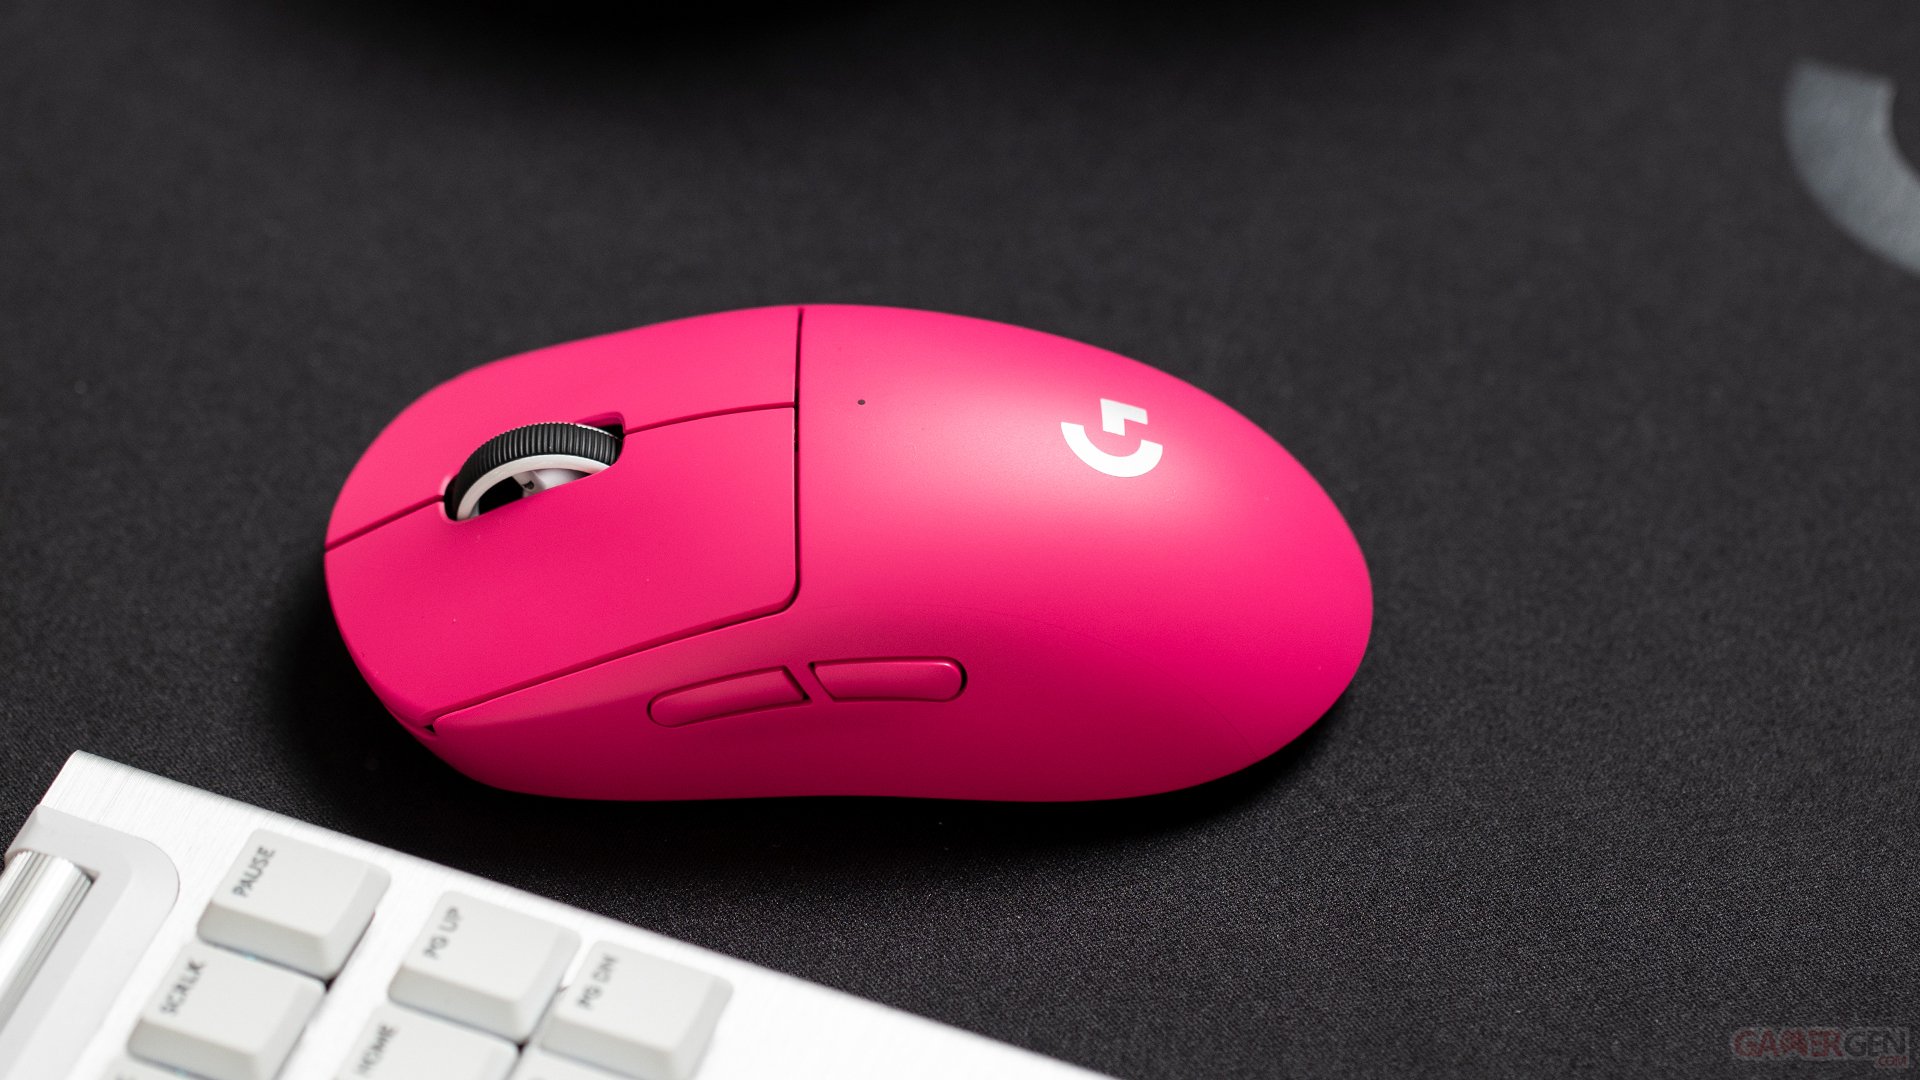 Logitech Pro X Superlight : la souris légère et sans fil déclinée en rose 